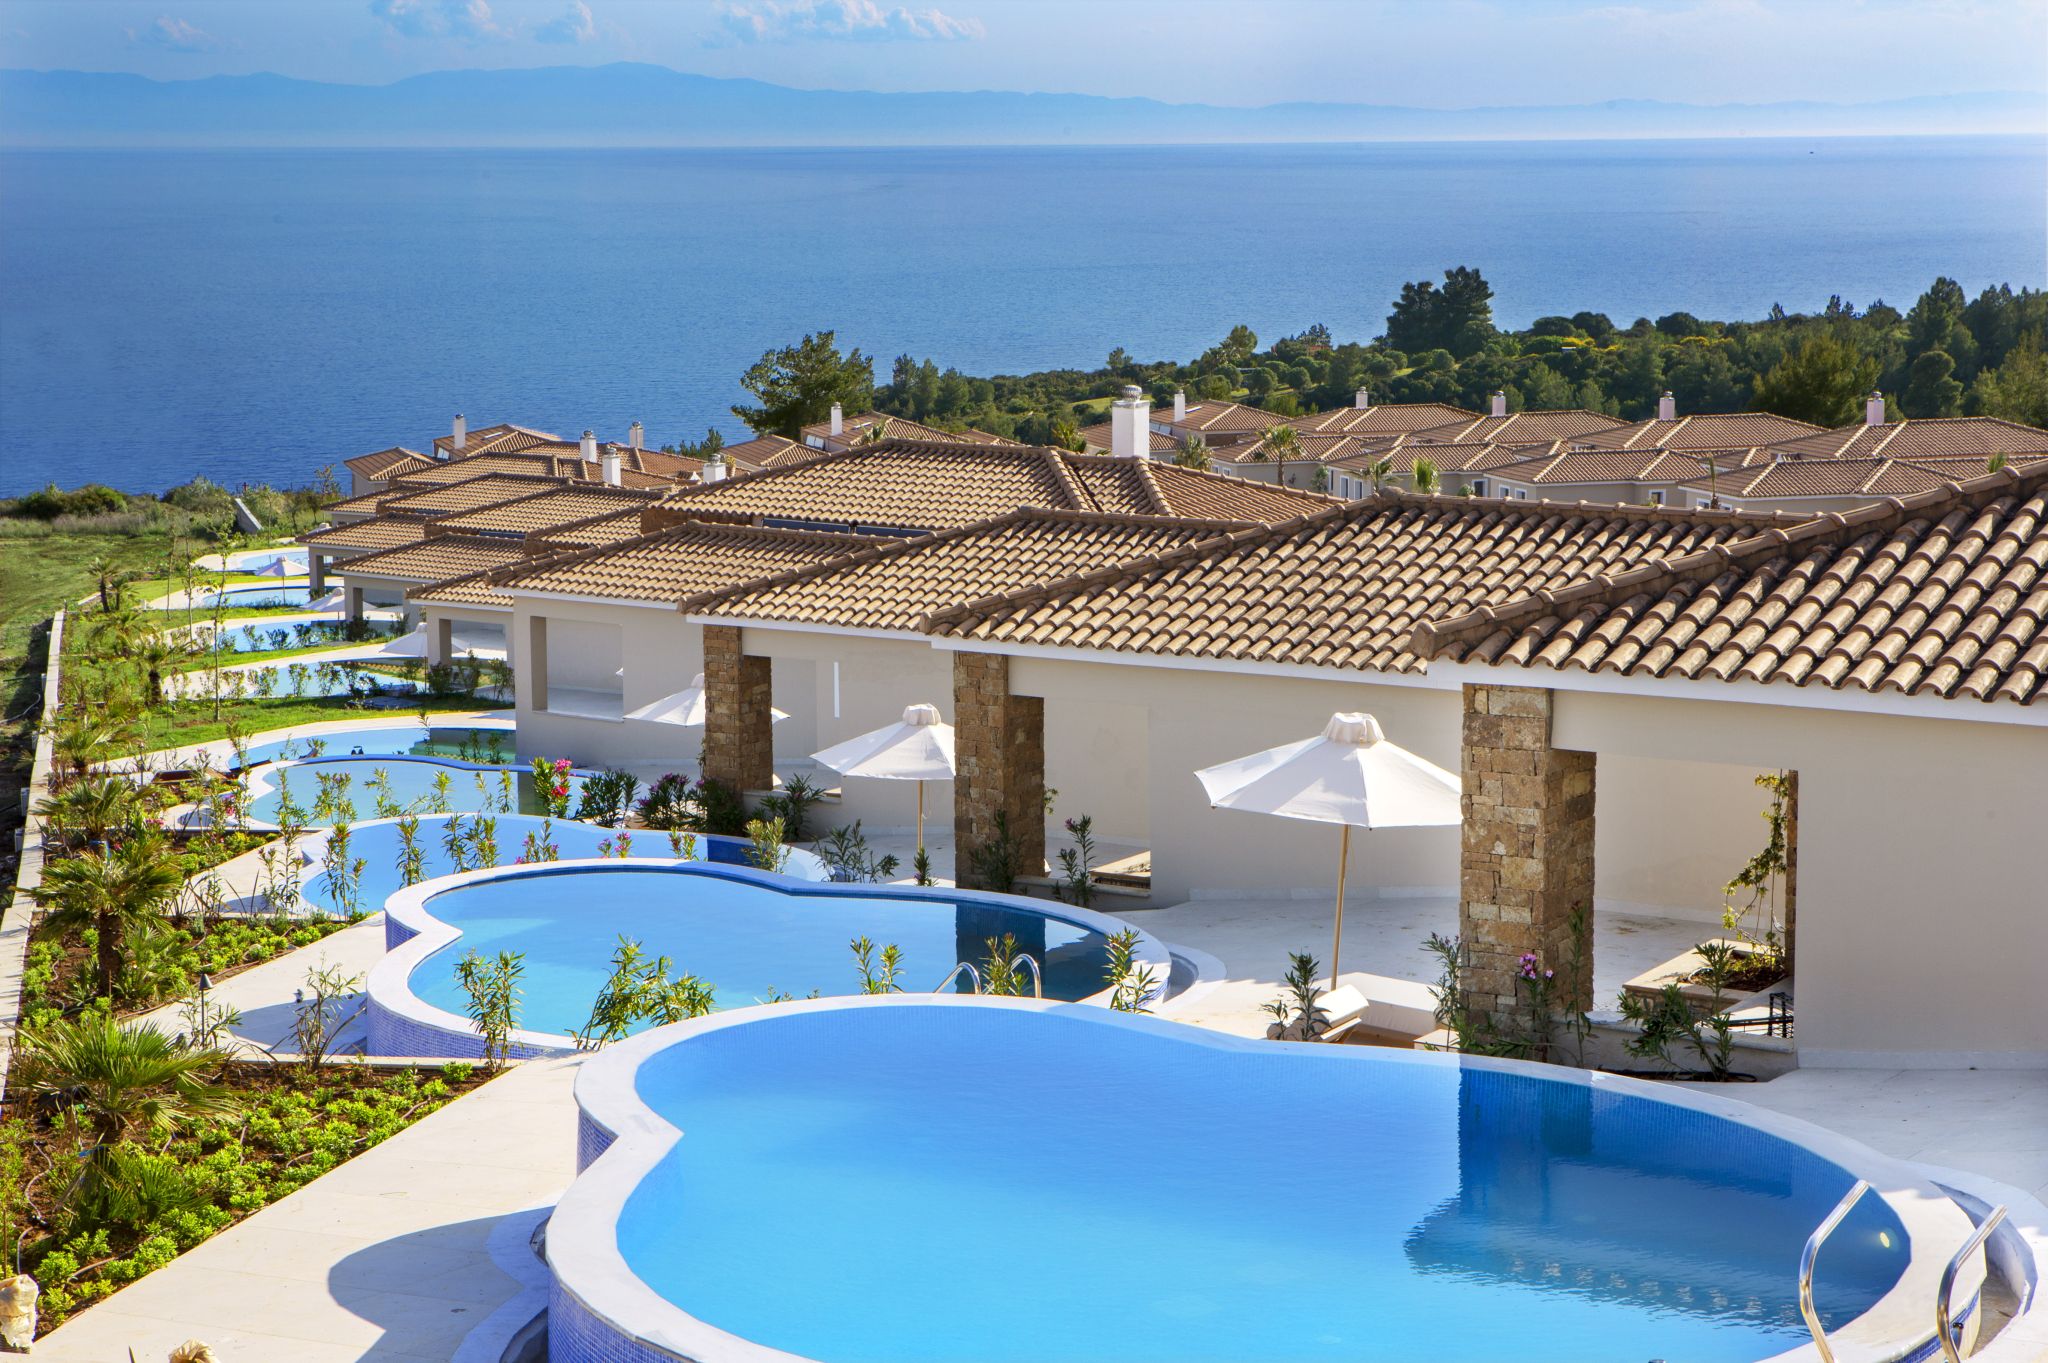 Το νέο luxury ξενοδοχείο της Zeus στη Χαλκιδική – Στα 50 εκατ. ευρώ η επένδυση (pics)